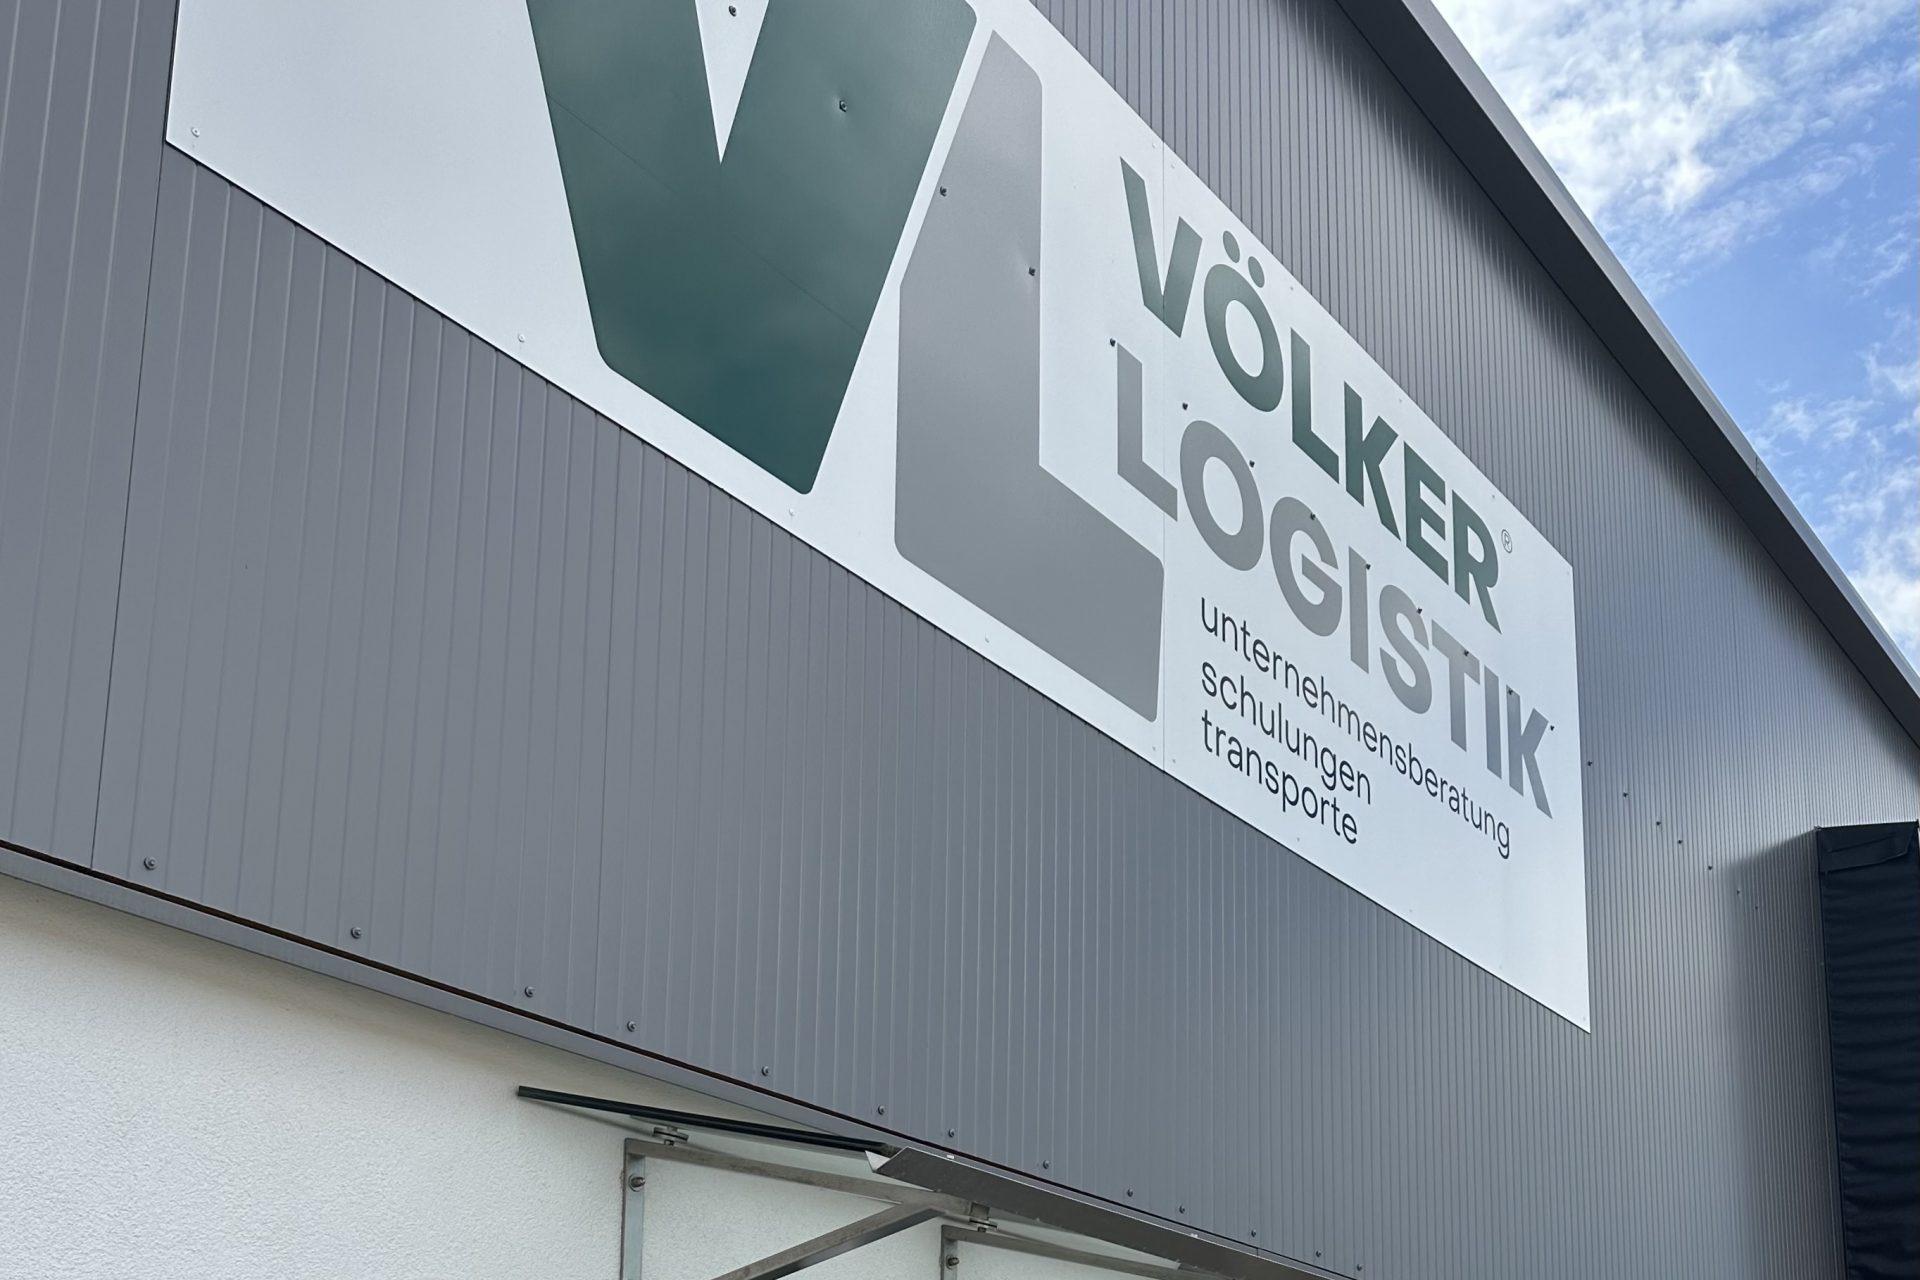 VCHD Cargo GmbH přesouvá své sídlo z Radeburgu do Alsfeldu